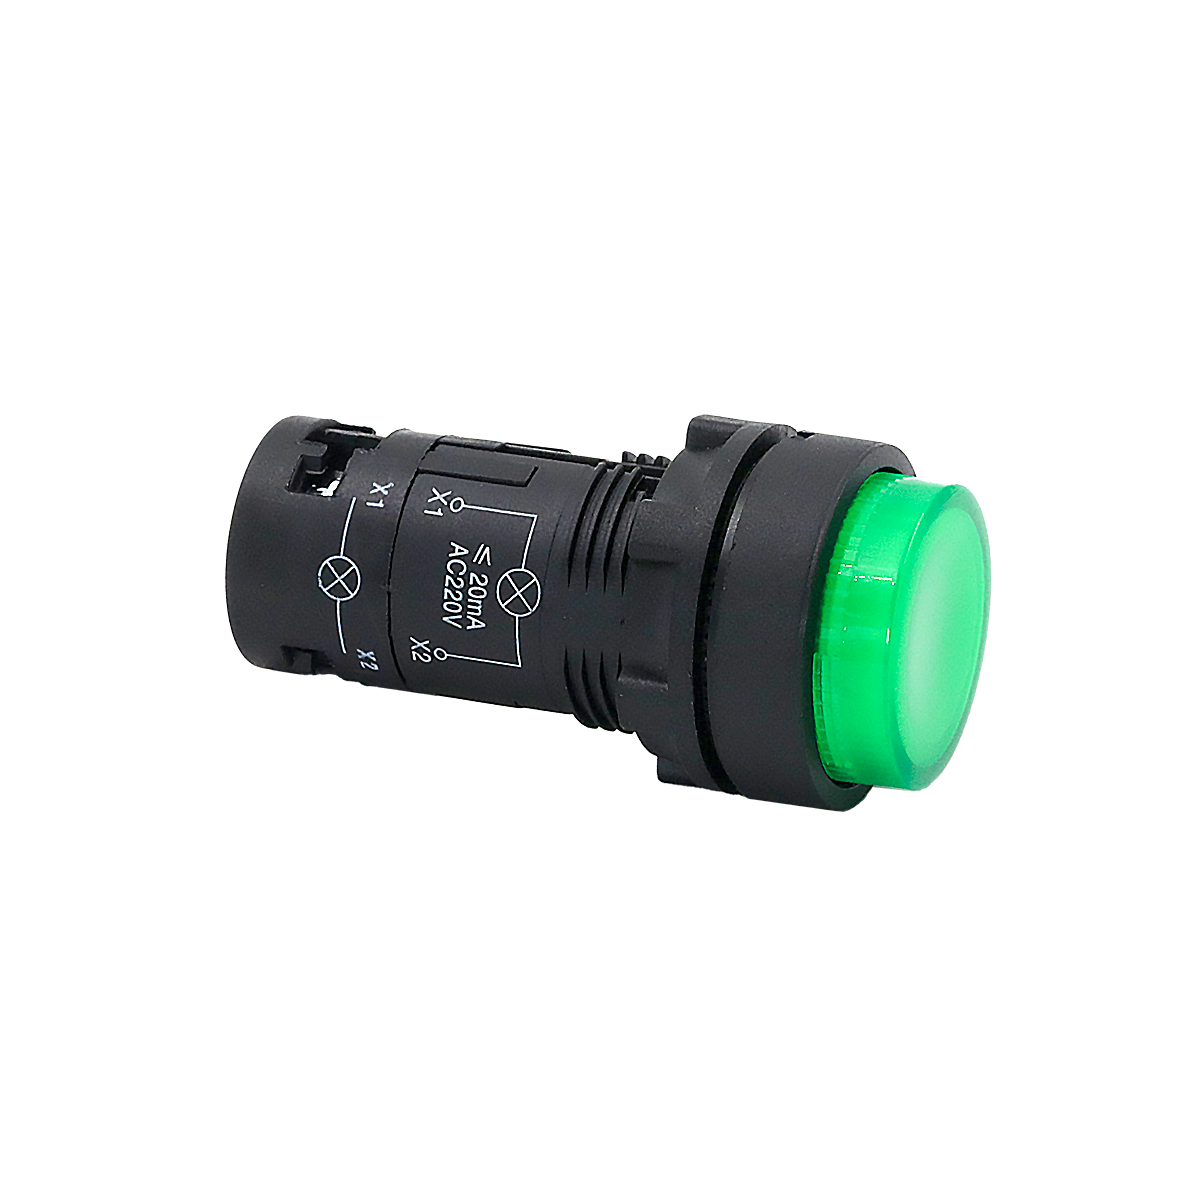 MTB7-EW33616. Кнопка зеленая выступающая с подсветкой, 1NO, 220V AC, IP54, пластик